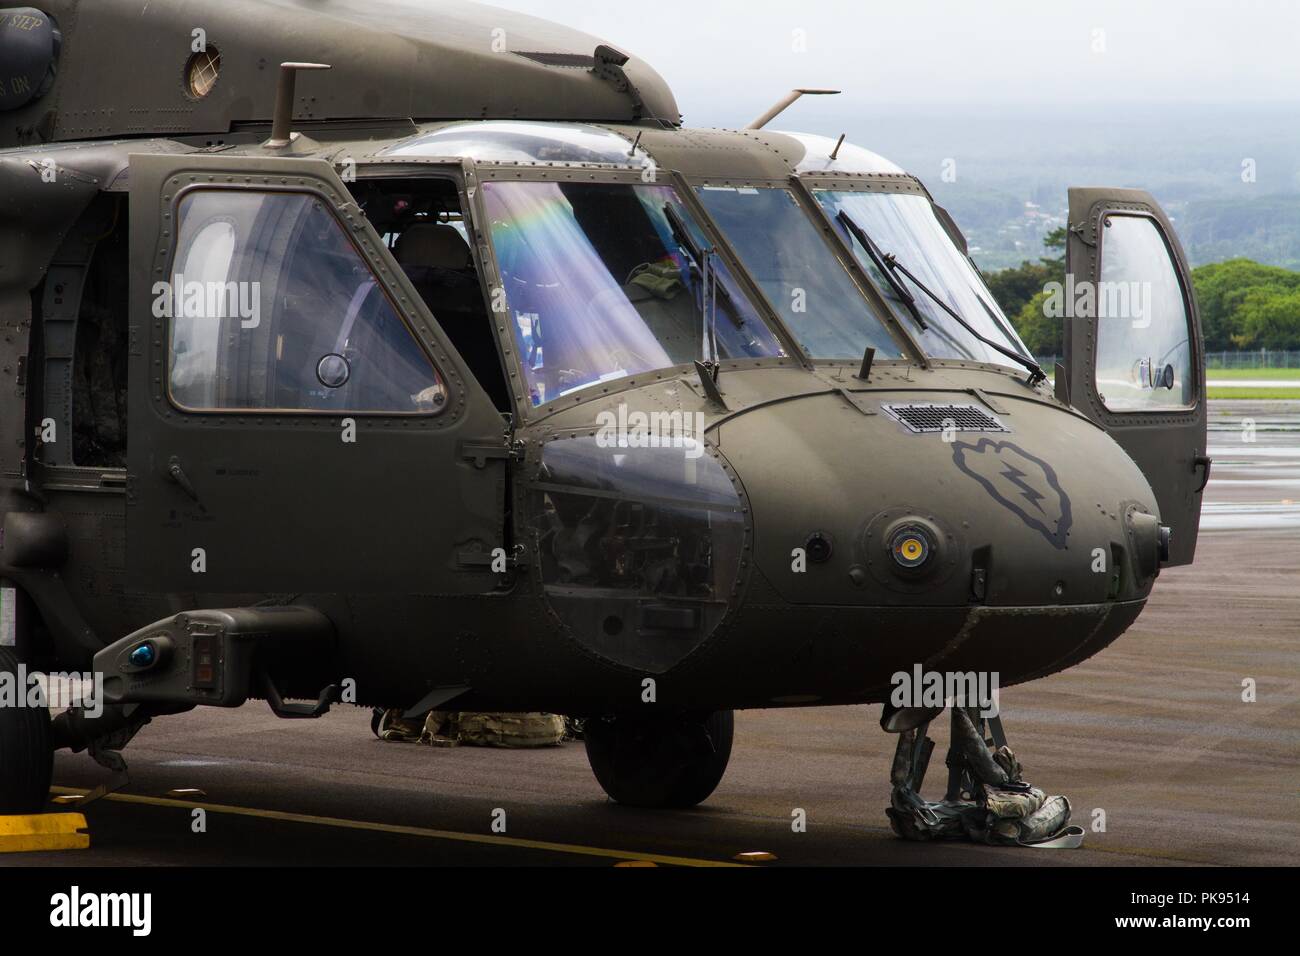 Soldati di UH-60 Black Hawk gli equipaggi di volo, XXV Combattere la Brigata Aerea, XXV divisione di fanteria, Hawaii, prepararsi a fornire per il Dipartimento della Difesa le missioni di sostegno alla Federal Emergency Management Agency come parte della Joint Task Force 5-0, 26 agosto 2018. Questa task force è stato istituito per rispondere agli effetti dell'Uragano Lane sullo stato delle Hawaii. Le autorità locali e dello stato delle Hawaii, attraverso JTF 5-0, richiesto HH-60M Black Hawk elicotteri con paranco di sollevamento capacità di assistere le autorità locali con operazioni di recupero sull'isola di Hawaii. JTF 5-0 è una joint task force guidata da un doppio Foto Stock